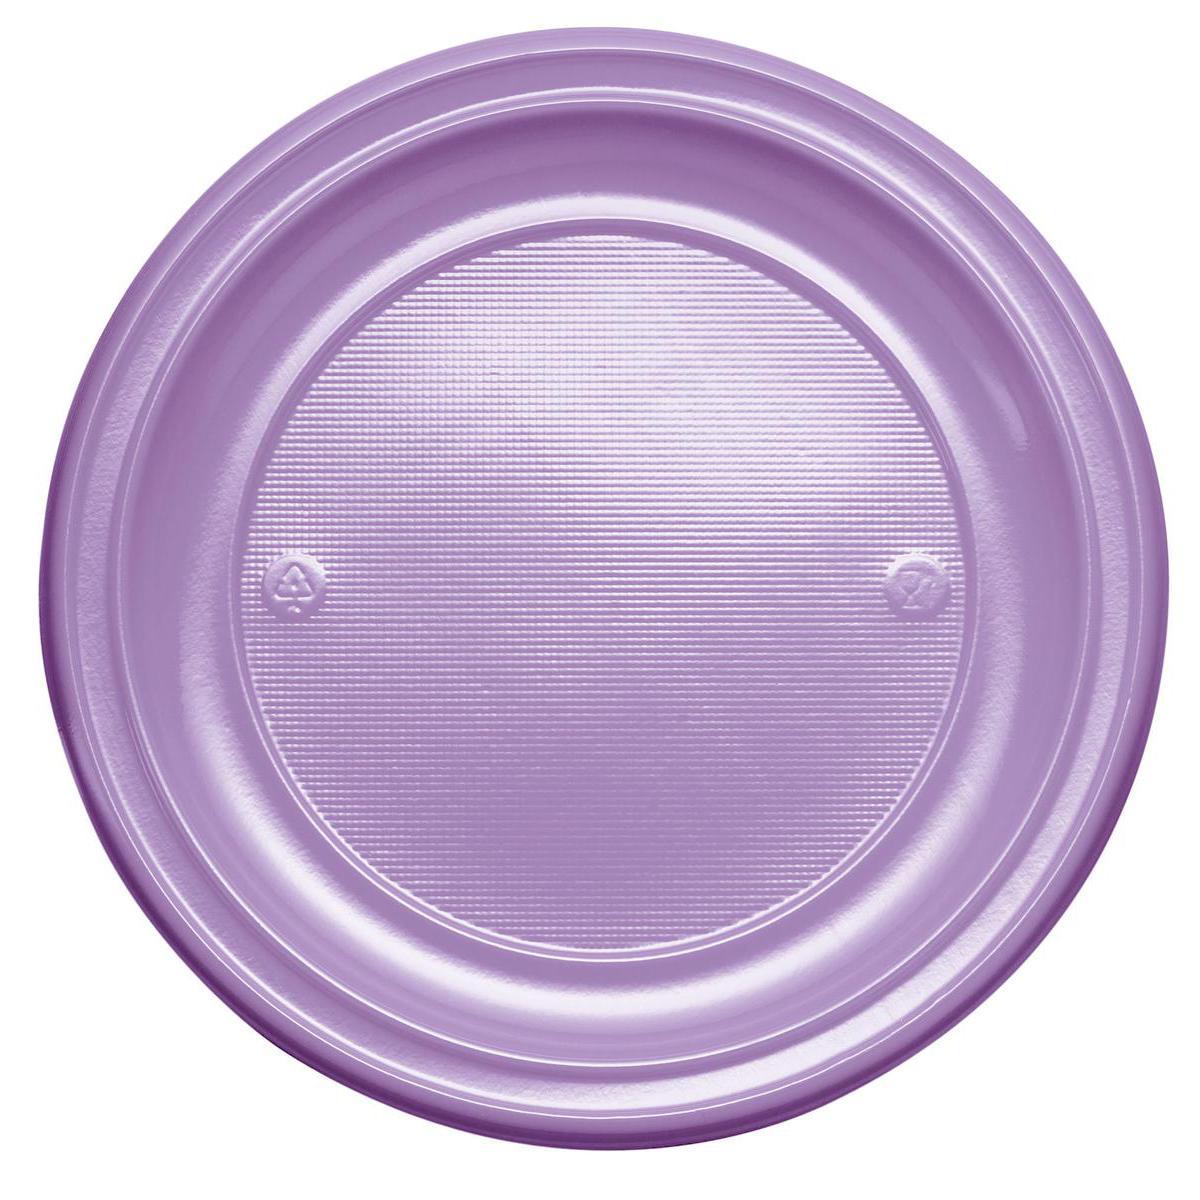 Lot de 20 assiettes en plastique - 17 cm -Polystyrène- Violet amethyste